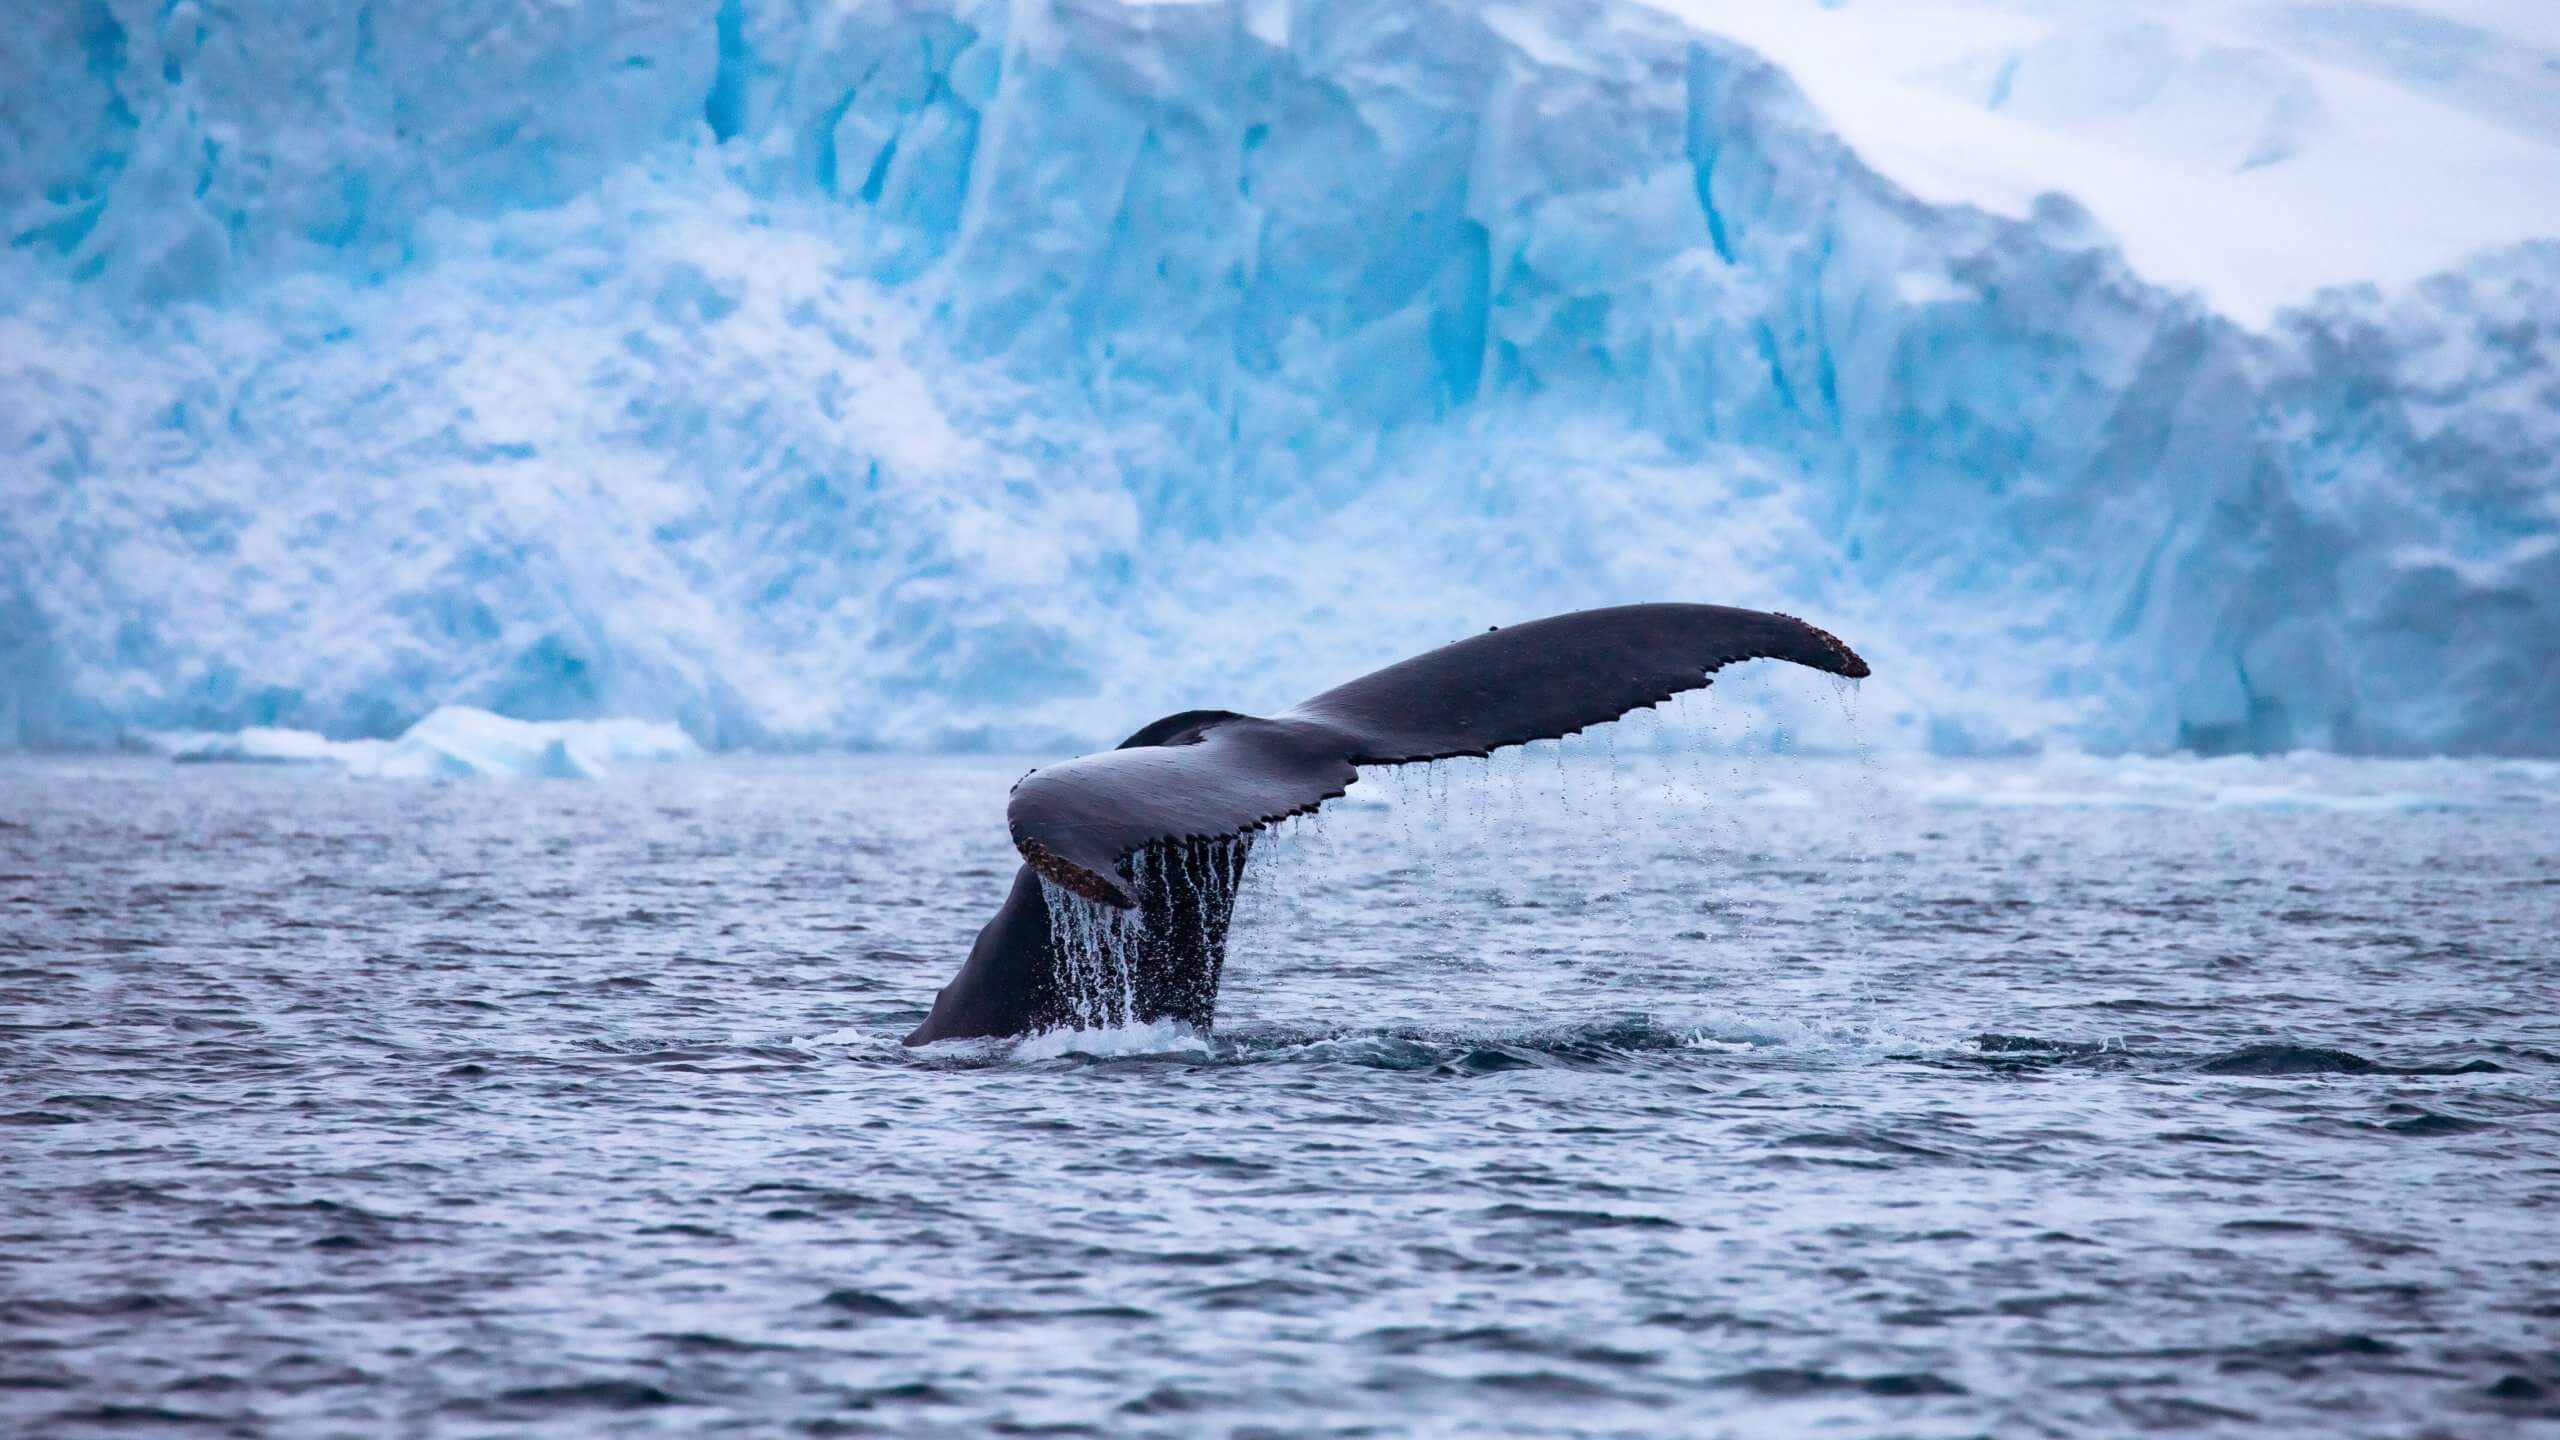 מחקר חדש ממחיש את תרומתם האדירה של הלווייתנים, שעשויים לסייע לנו במאבק במשבר האקלים. Photo by Lee Kelai on Unsplash